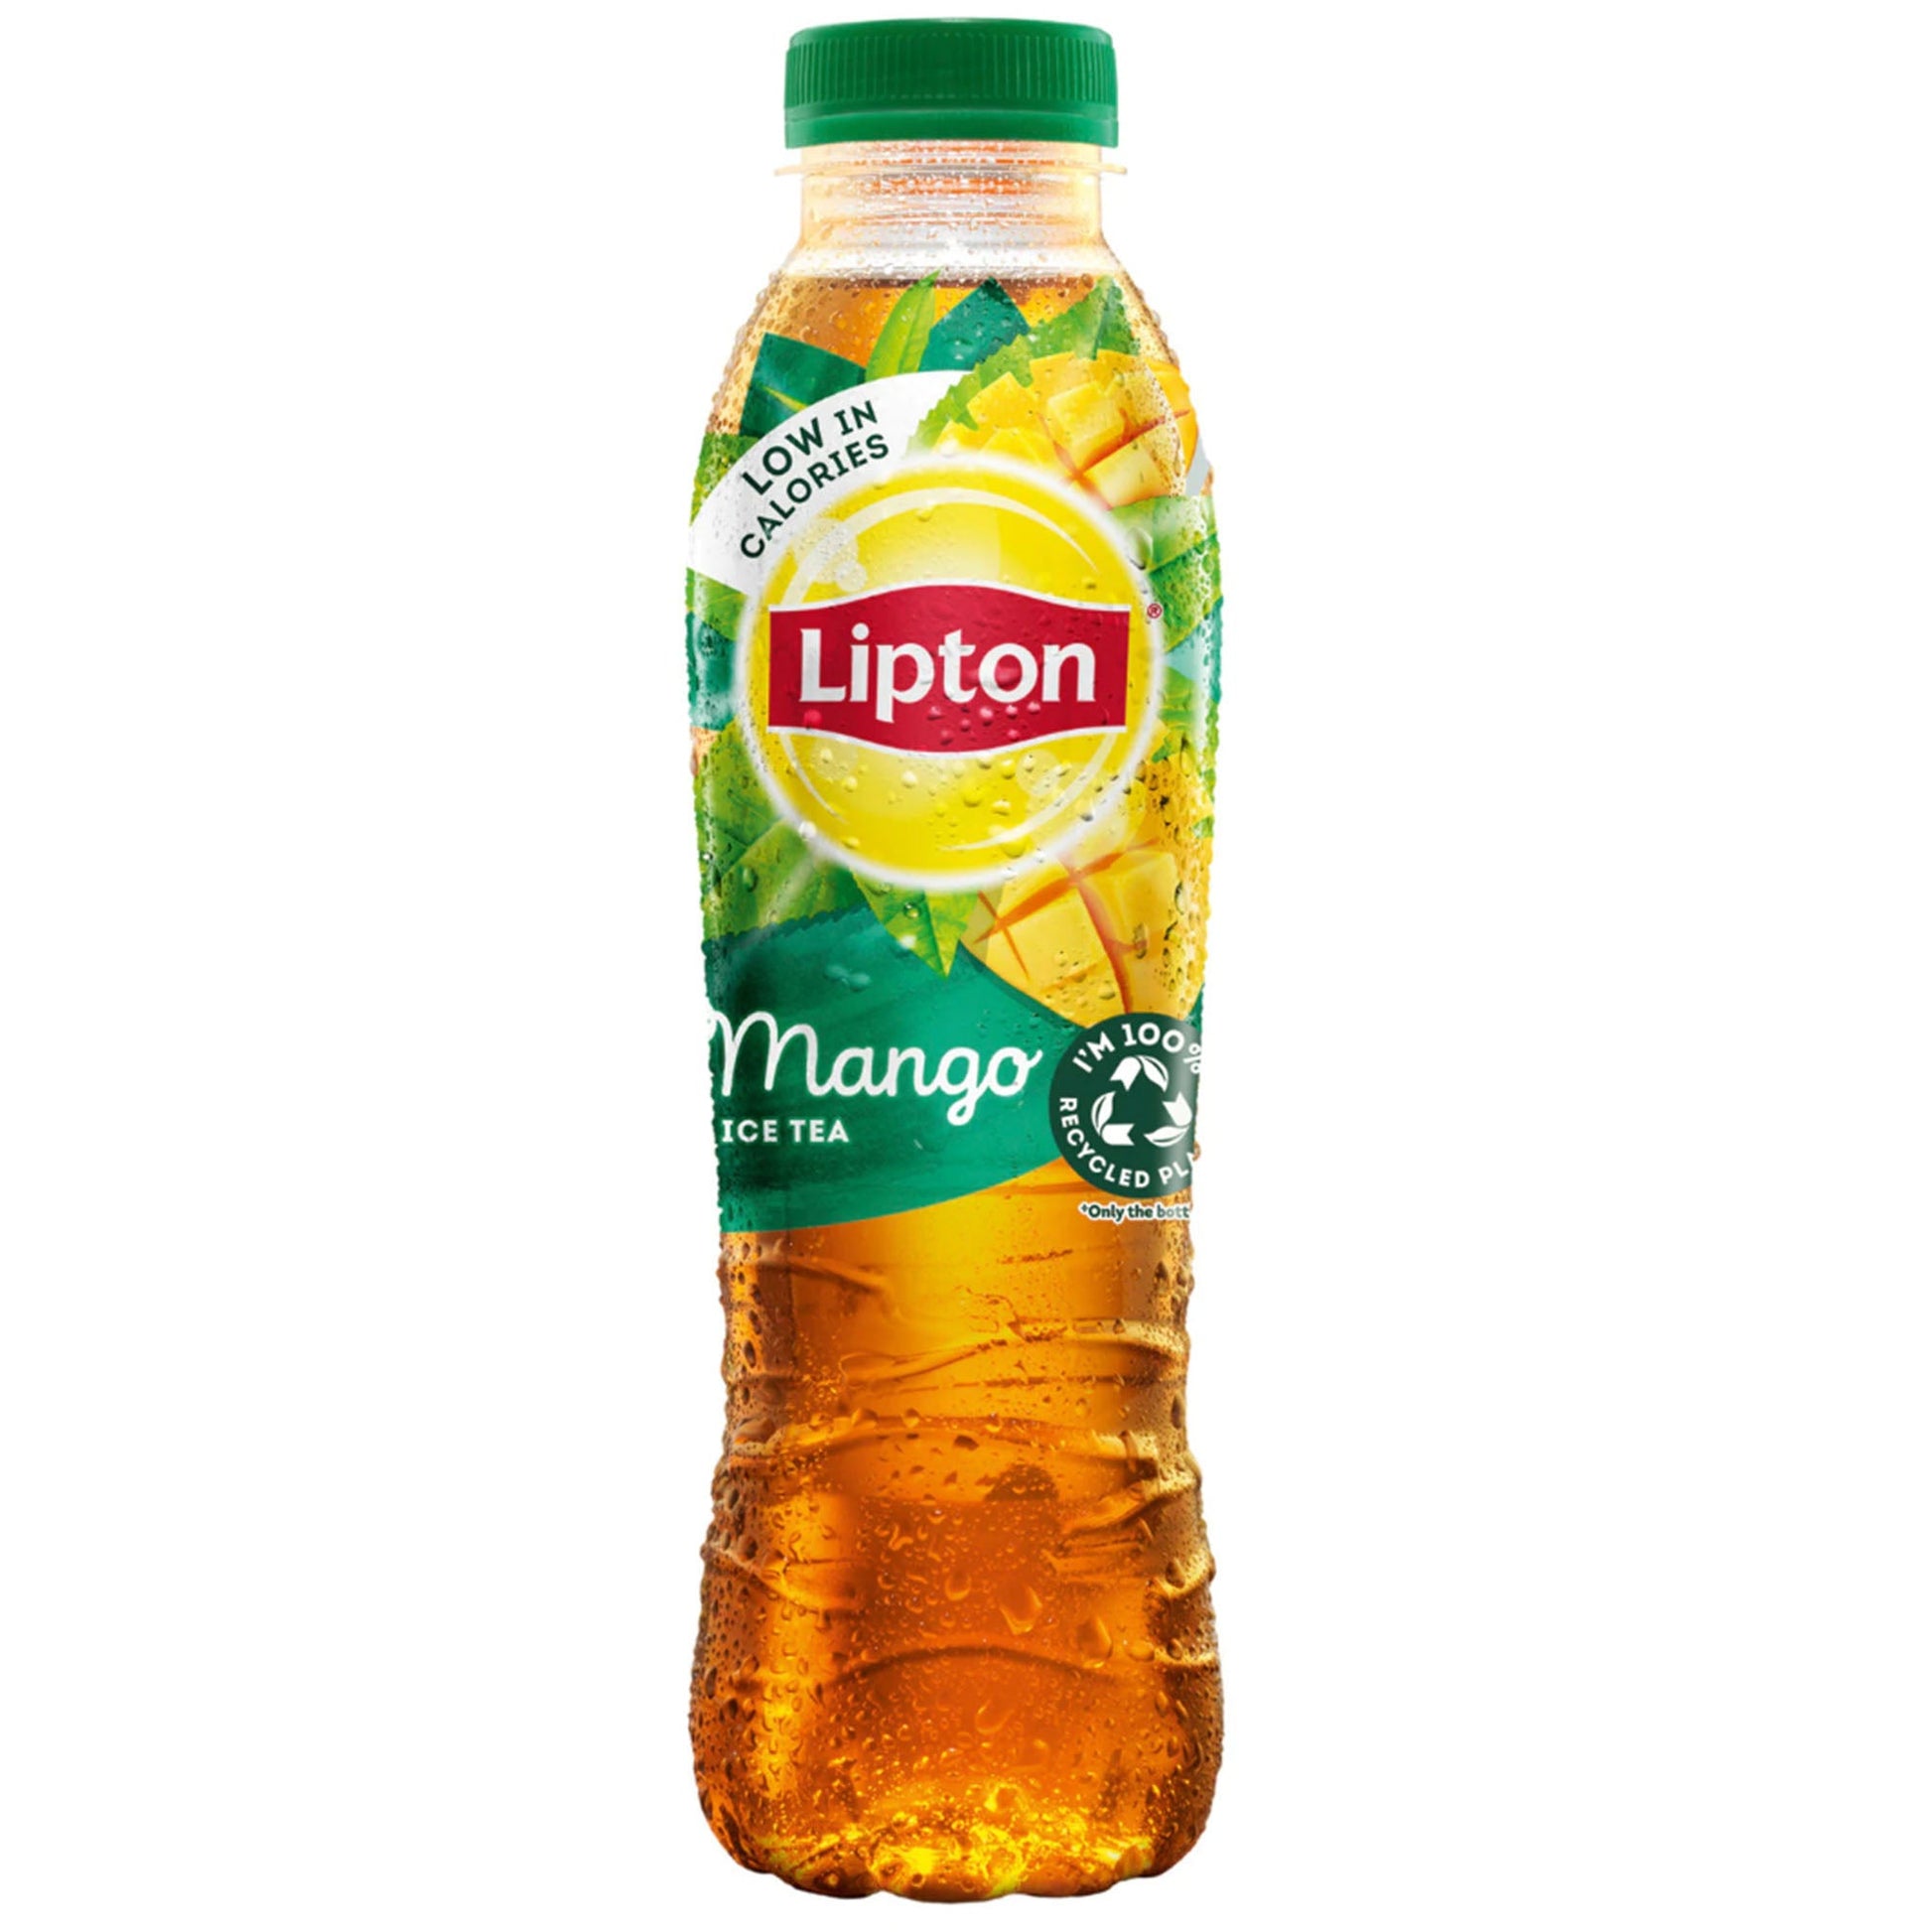 Lipton Iced Tea Mango